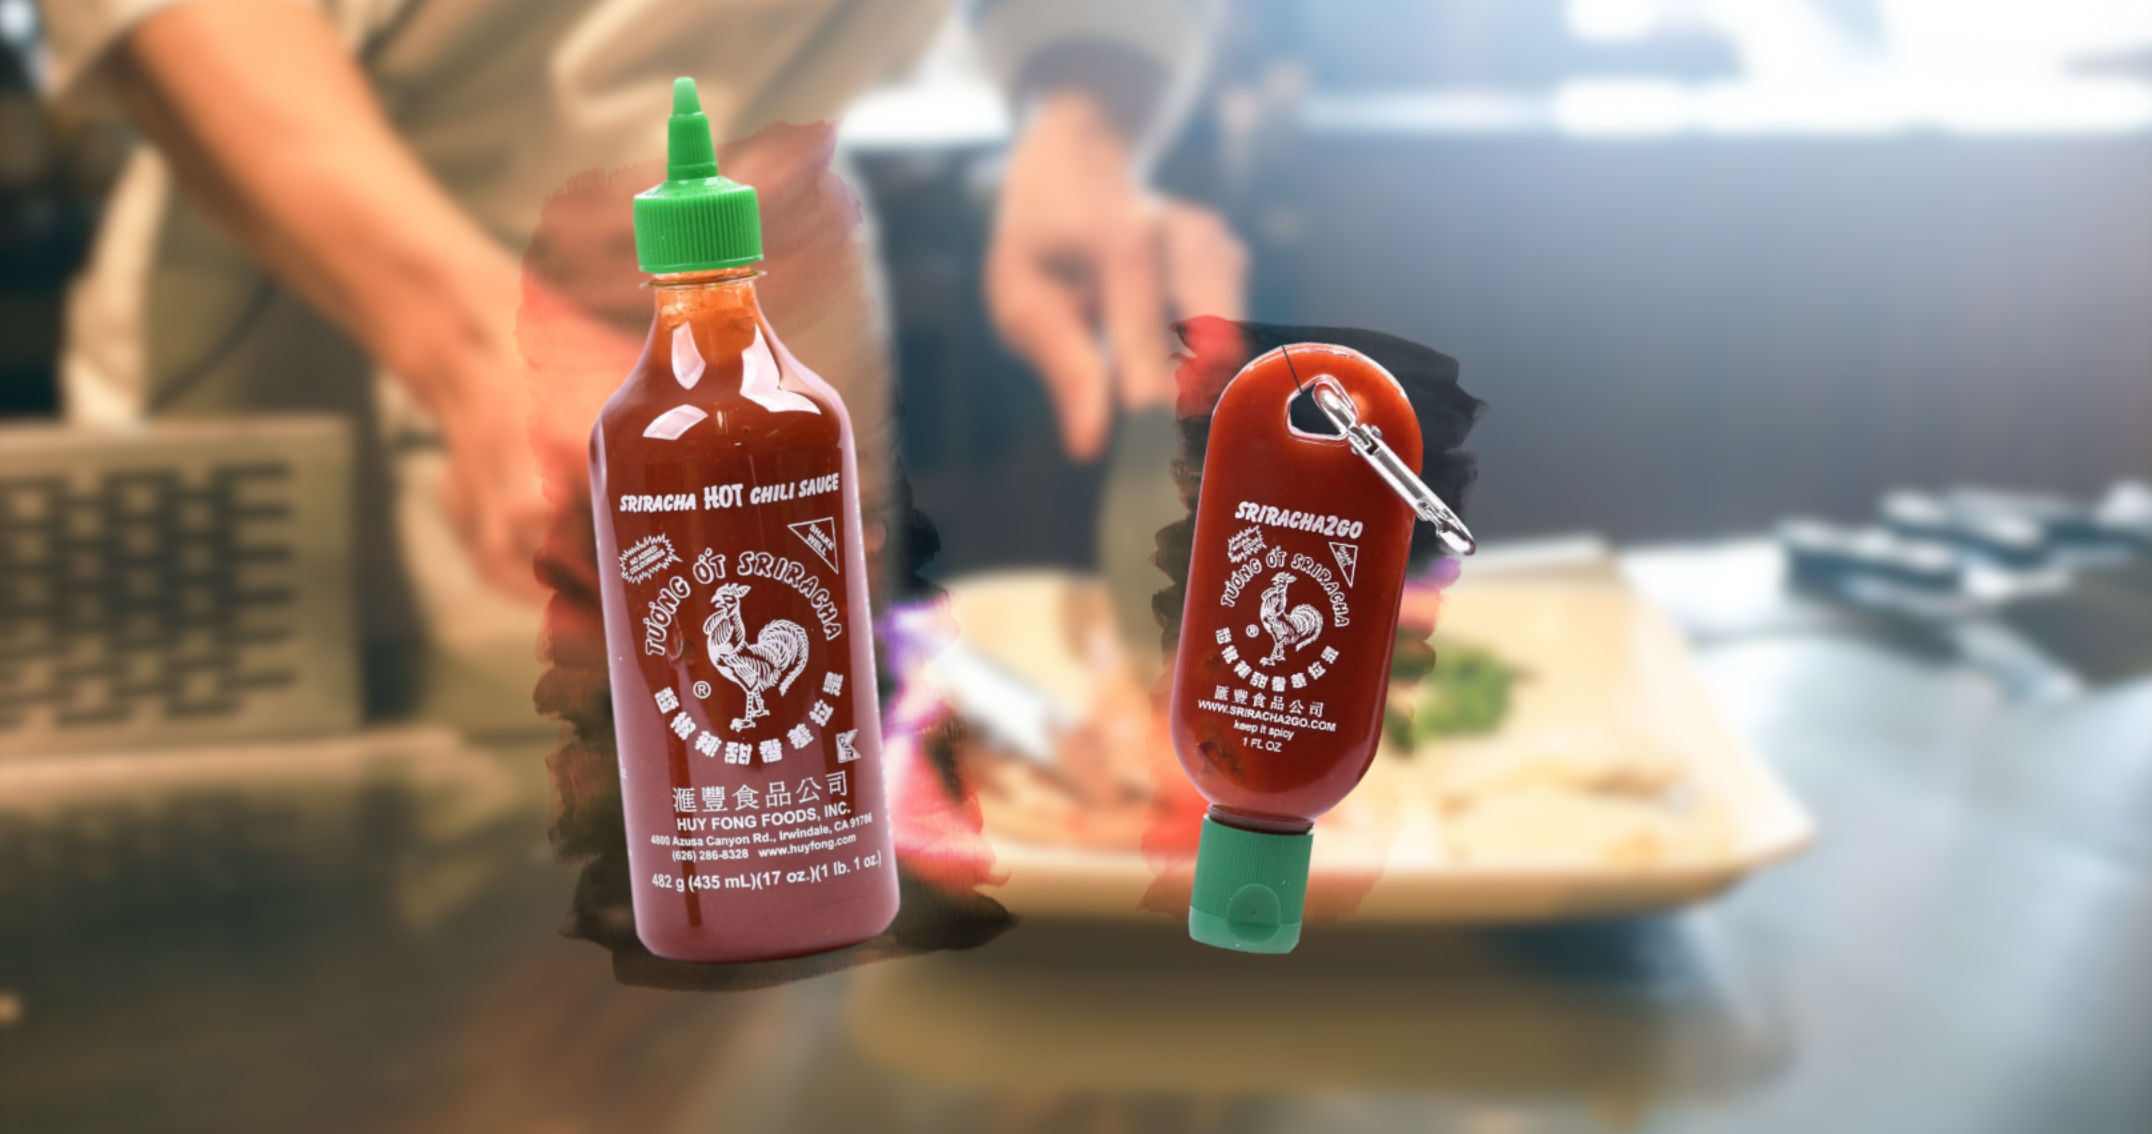 Welvarend gebonden scherp De perfecte sleutelhanger voor de echte Sriracha-fan - FHM